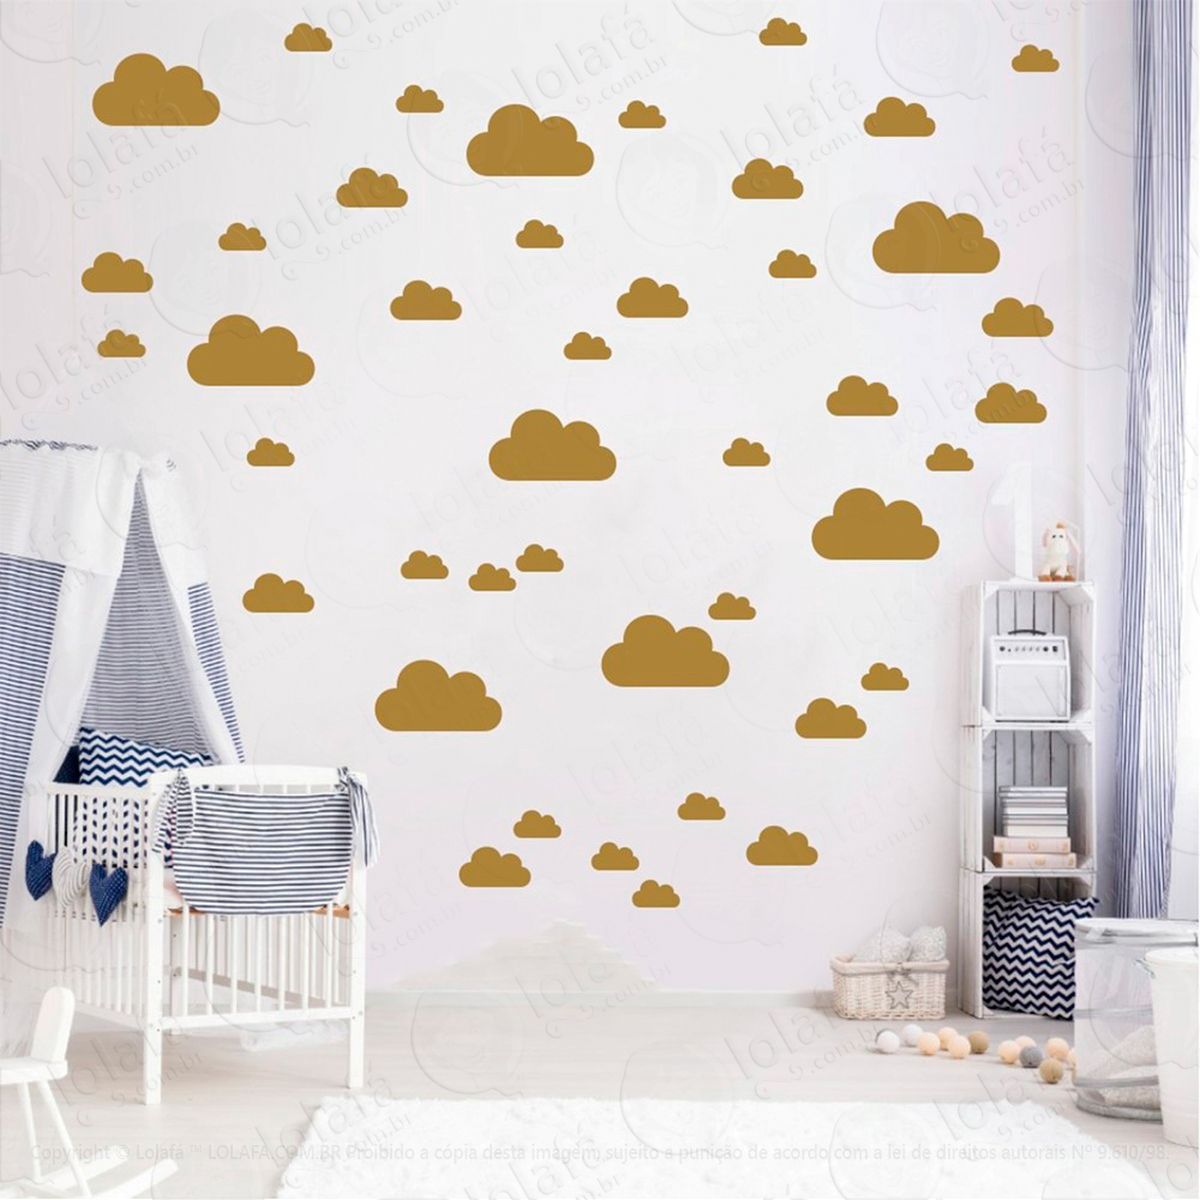 adesivos nuvens 78 peças adesivos para quarto de bebê infantil - mod:767